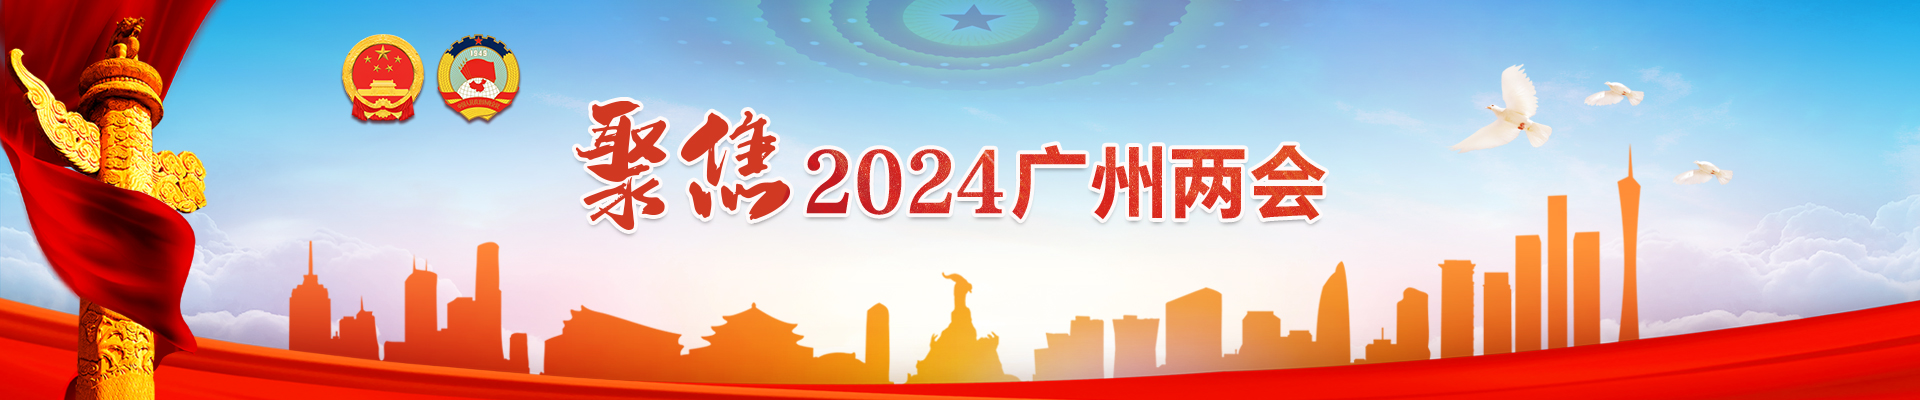 聚焦2024广州两会专题